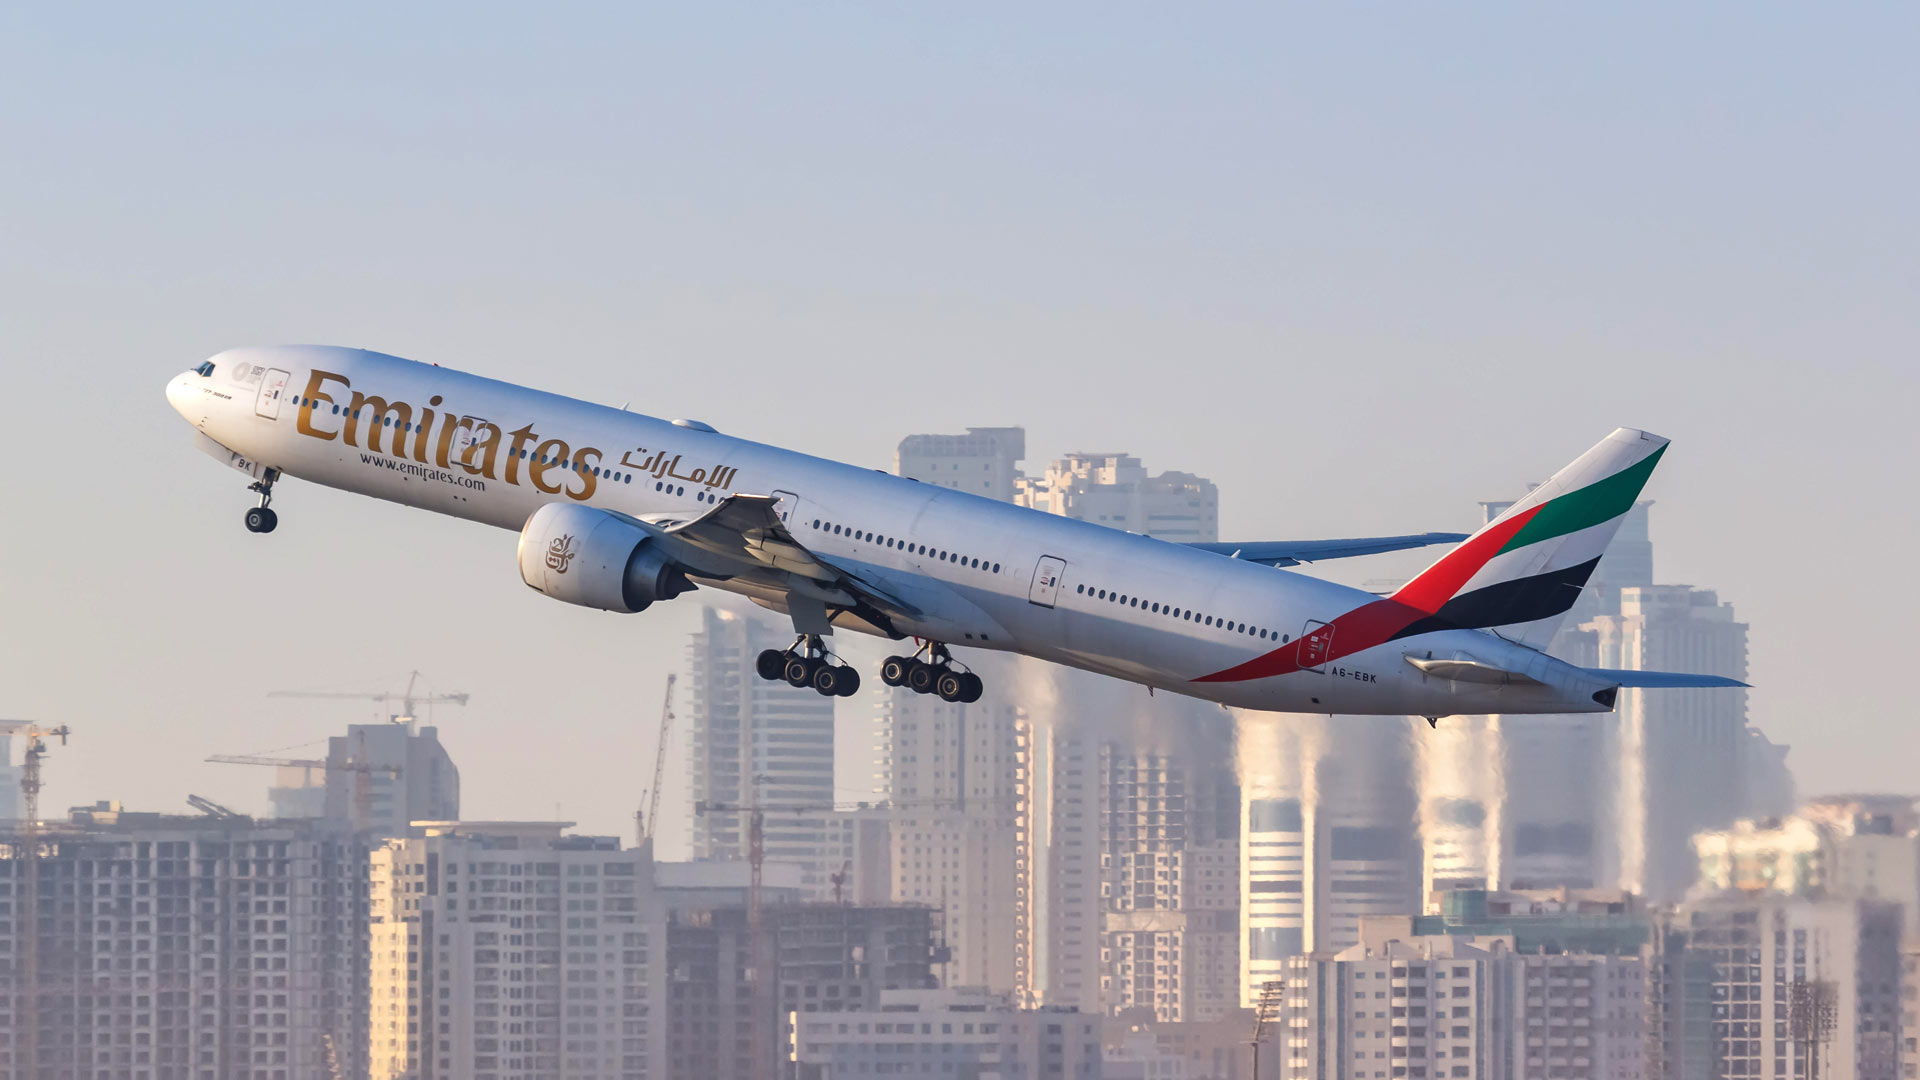 Emirates-Flugzeug Boeing 777 | picture alliance / CHROMORANGE